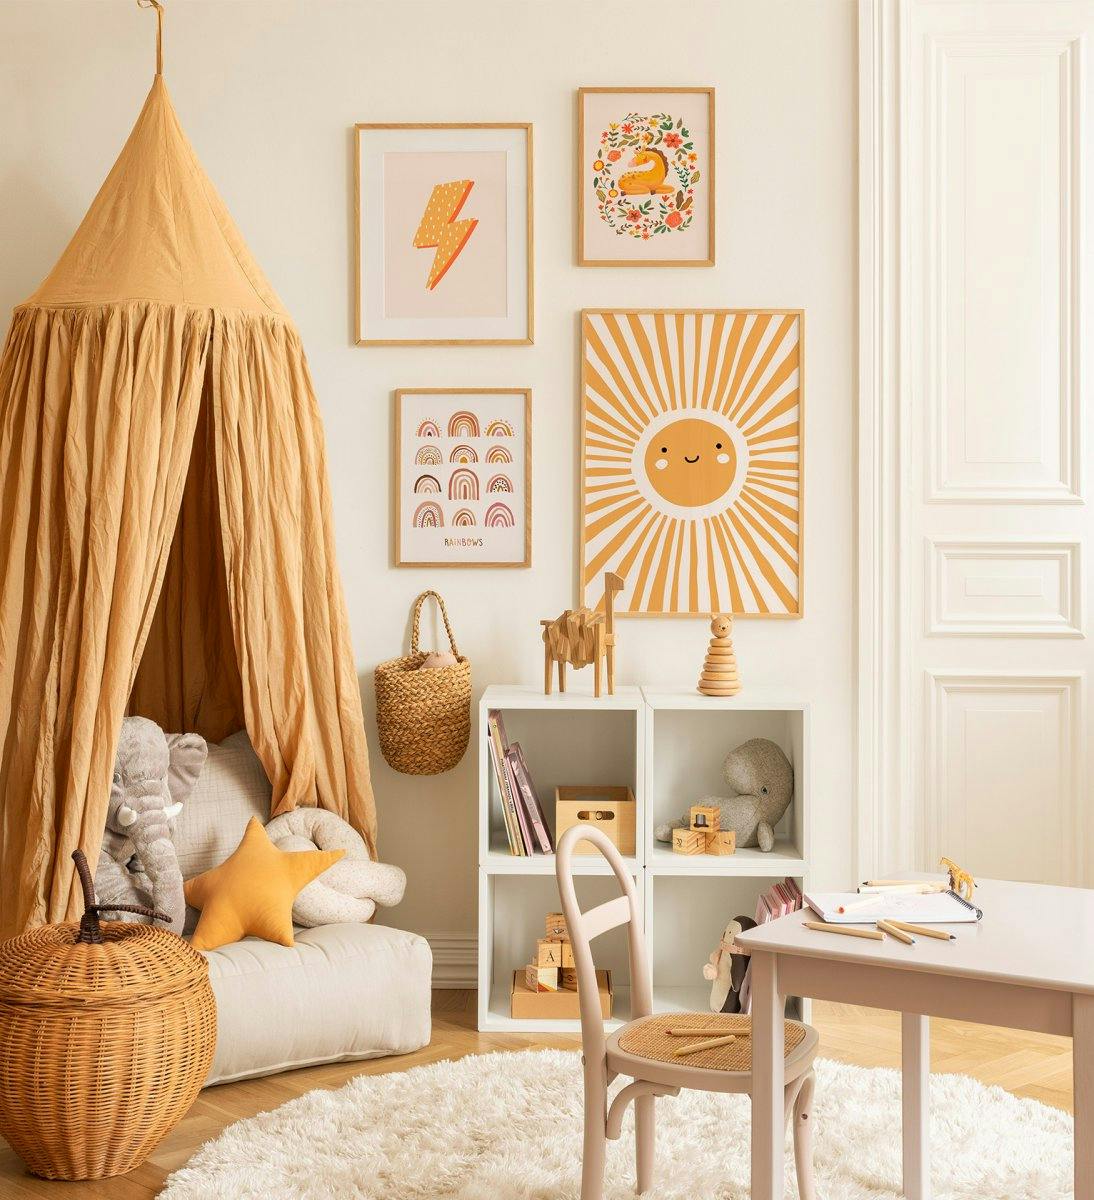 Galleria a parete per la camera dei bambini con animali e illustrazioni con una squadra in arancione con cornici in rovere per l